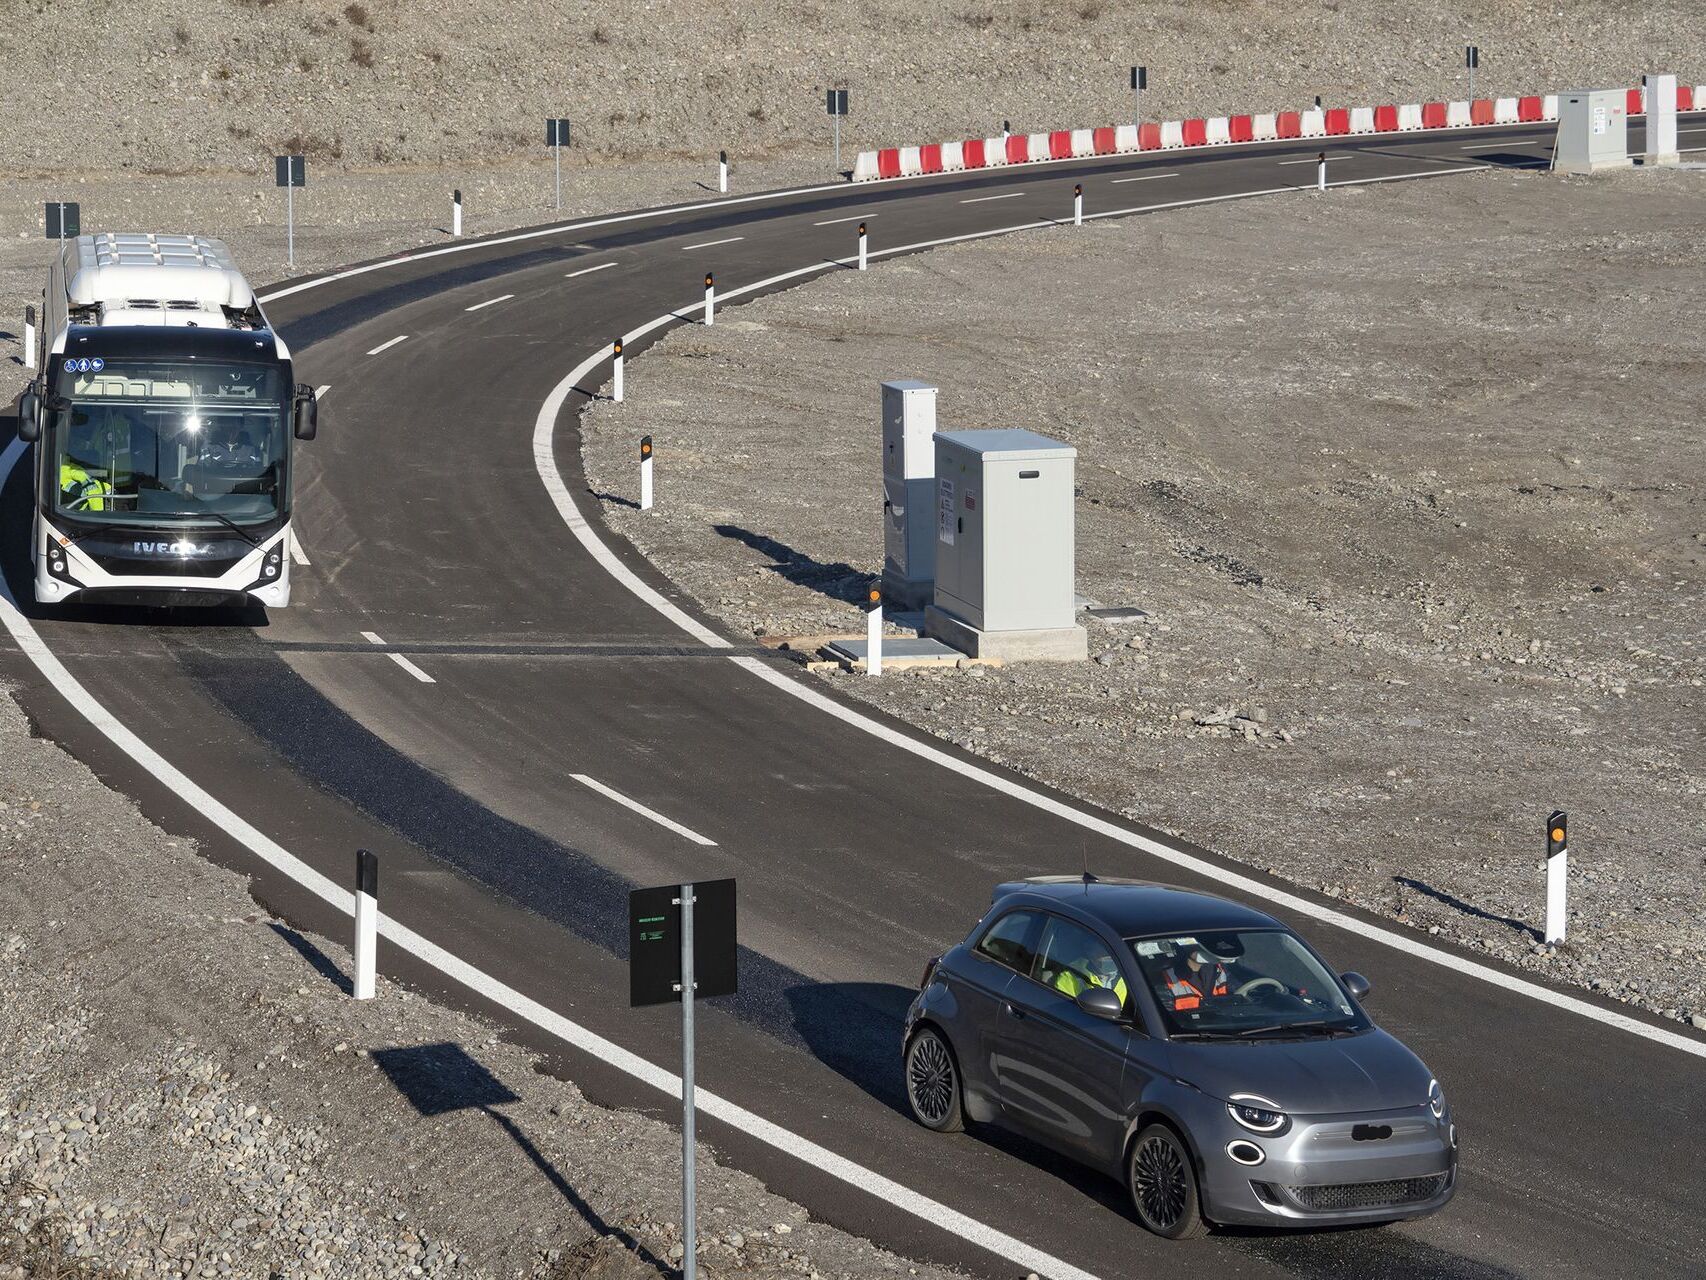 Testet e autobusit elektrik Iveco dhe Fiat 500 në "Arena e së ardhmes" në Chiari, në provincën e Lombardisë të Brescias: ky është një qark unazor inovativ, pranë autostradës BREBEMI A35, në të cilin ngarkimi i baterisë po testohet me induksion. të mjeteve elektrike, të cilat udhëtojnë në korsi të dedikuara për to, nën të cilat janë vendosur bobinat e asfaltit